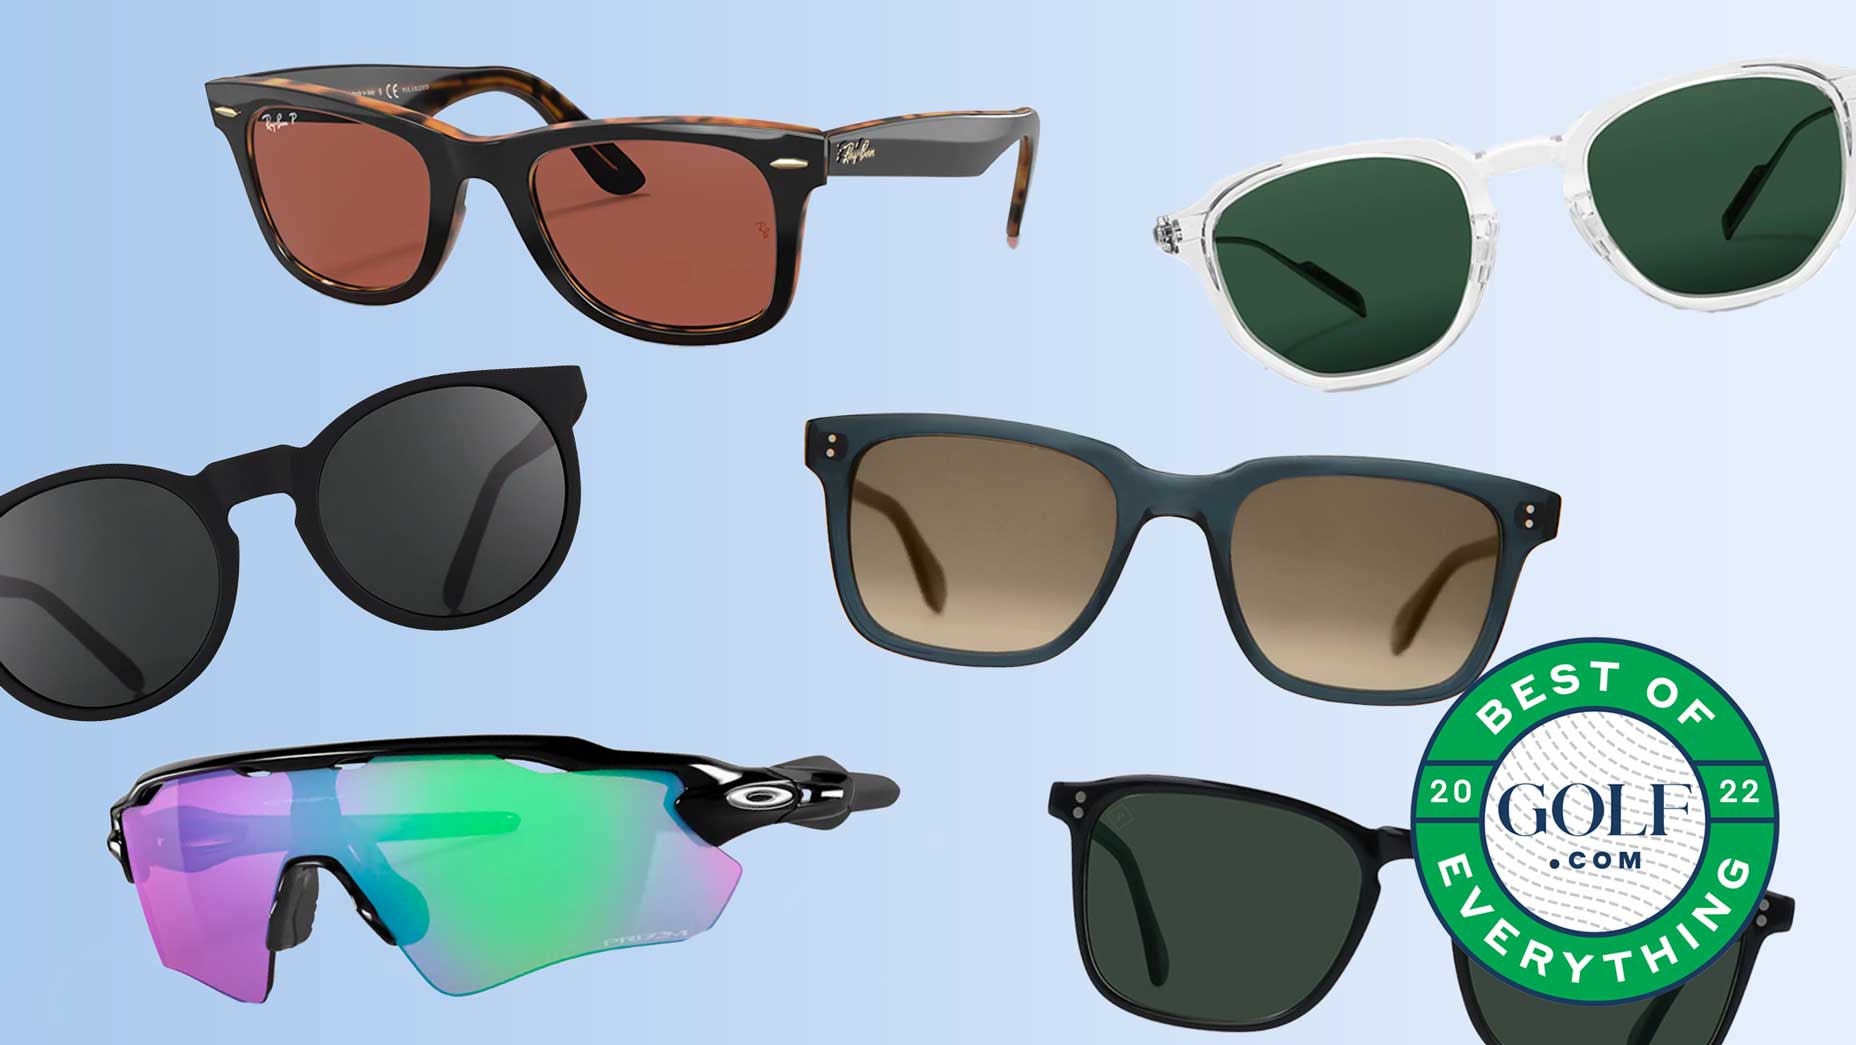 https://golf.com/wp-content/uploads/2022/11/Best-Sunglasses.jpg